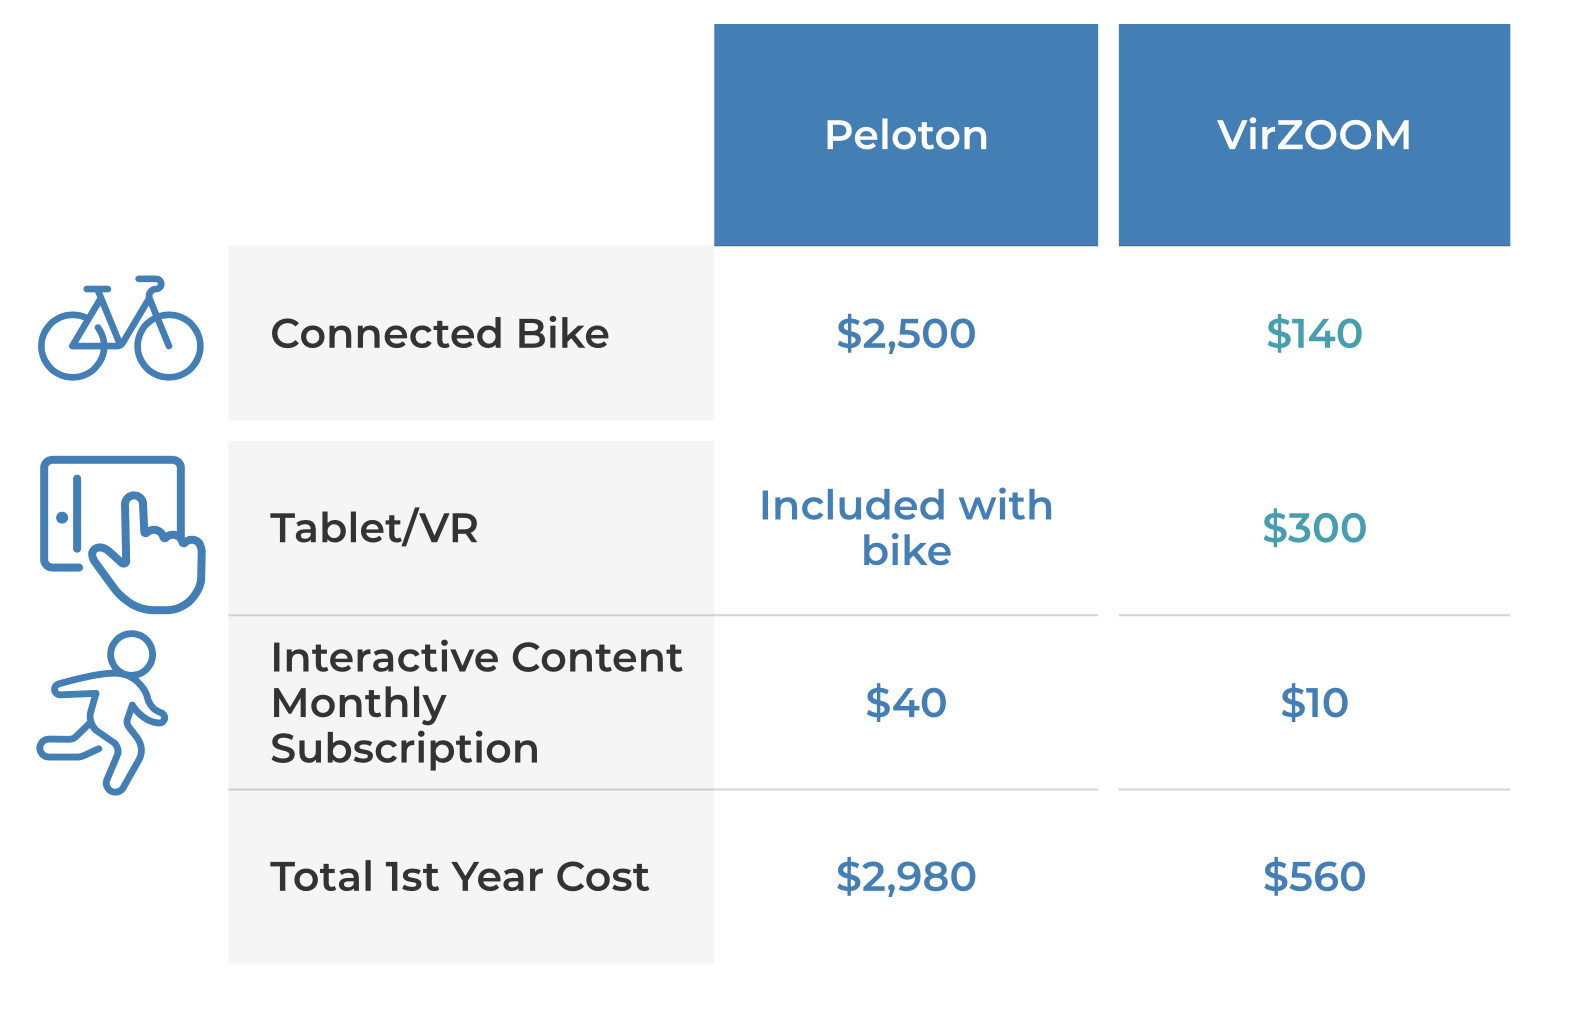 virzoom cost comparison vs Peloton